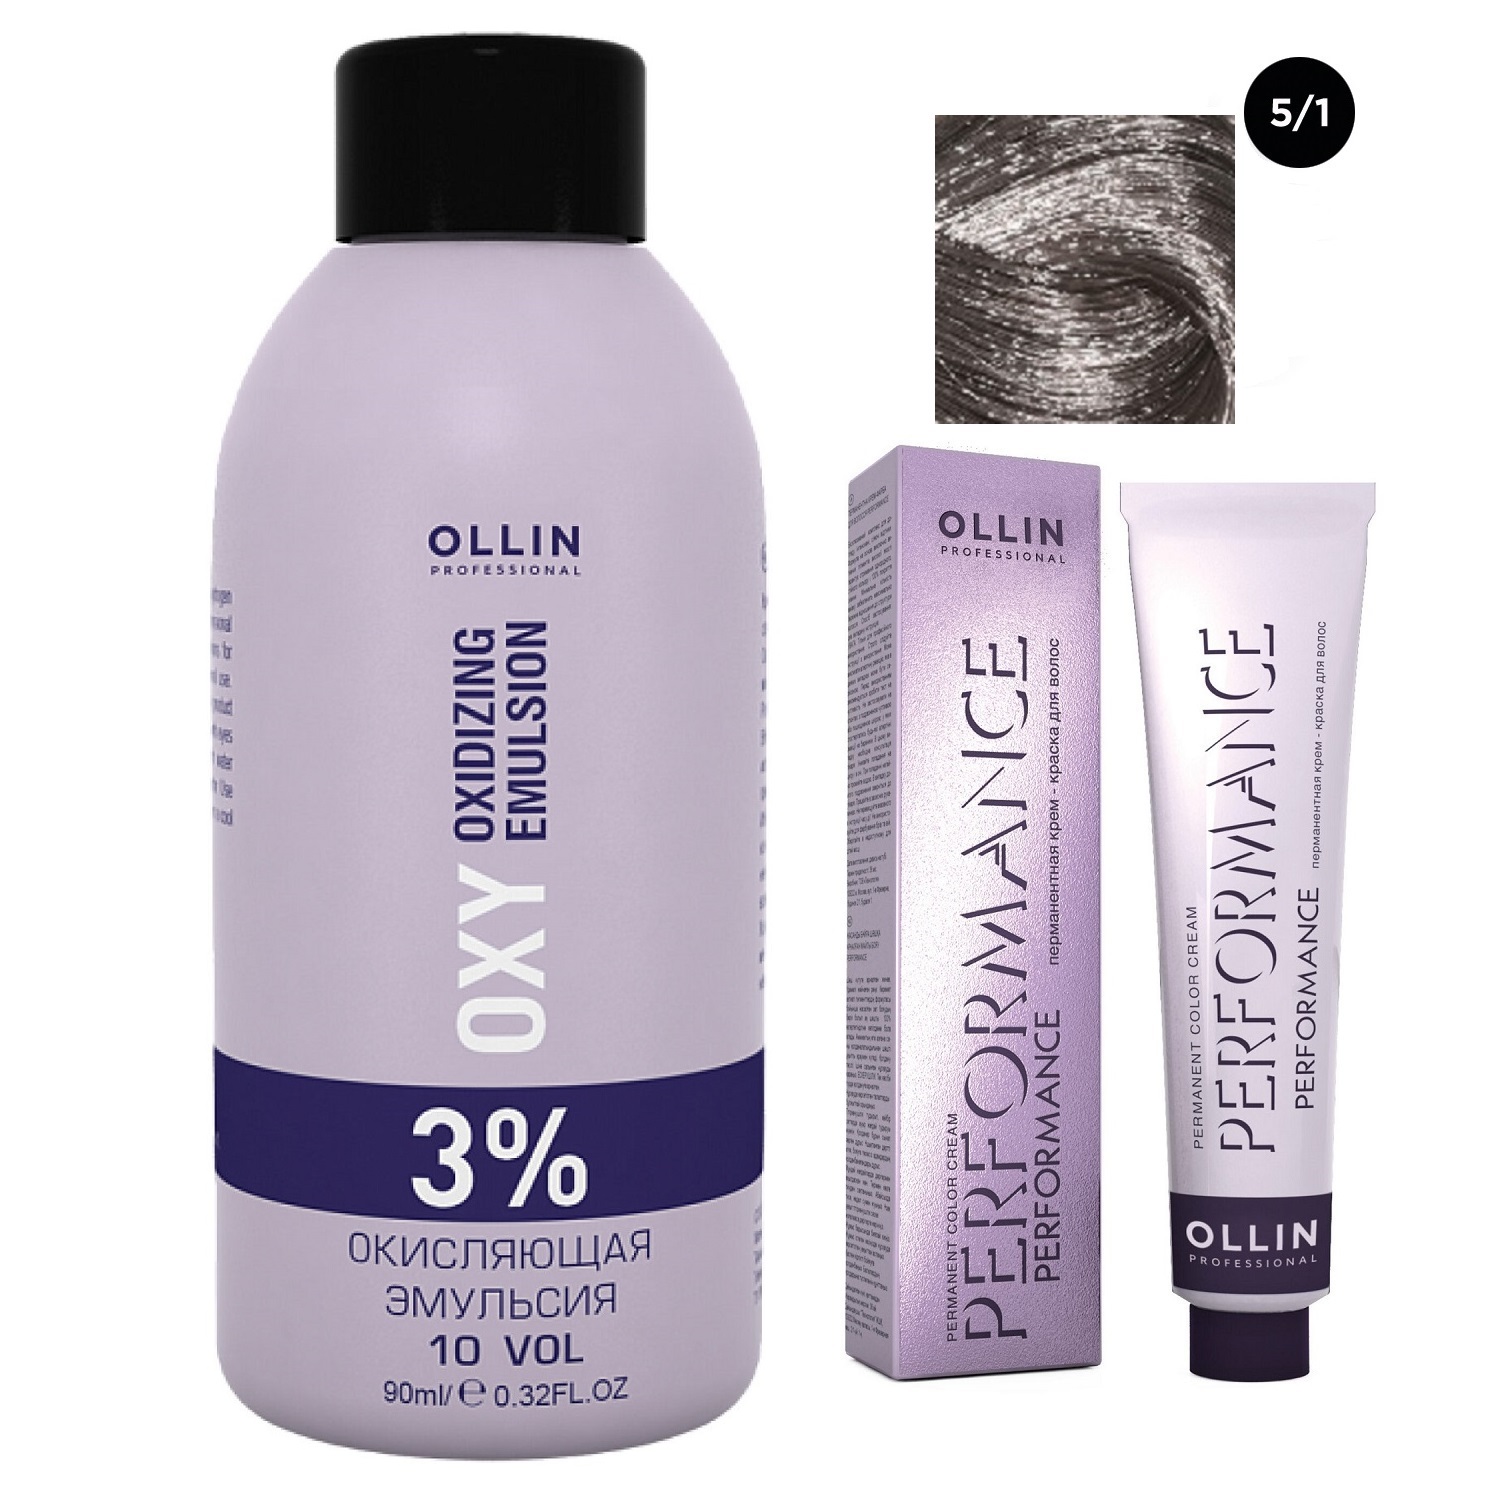 Ollin Professional Набор Перманентная крем-краска для волос Ollin Performance оттенок 5/1 светлый шатен пепельный 60 мл + Окисляющая эмульсия Oxy 3% 90 мл (Ollin Professional, Performance)